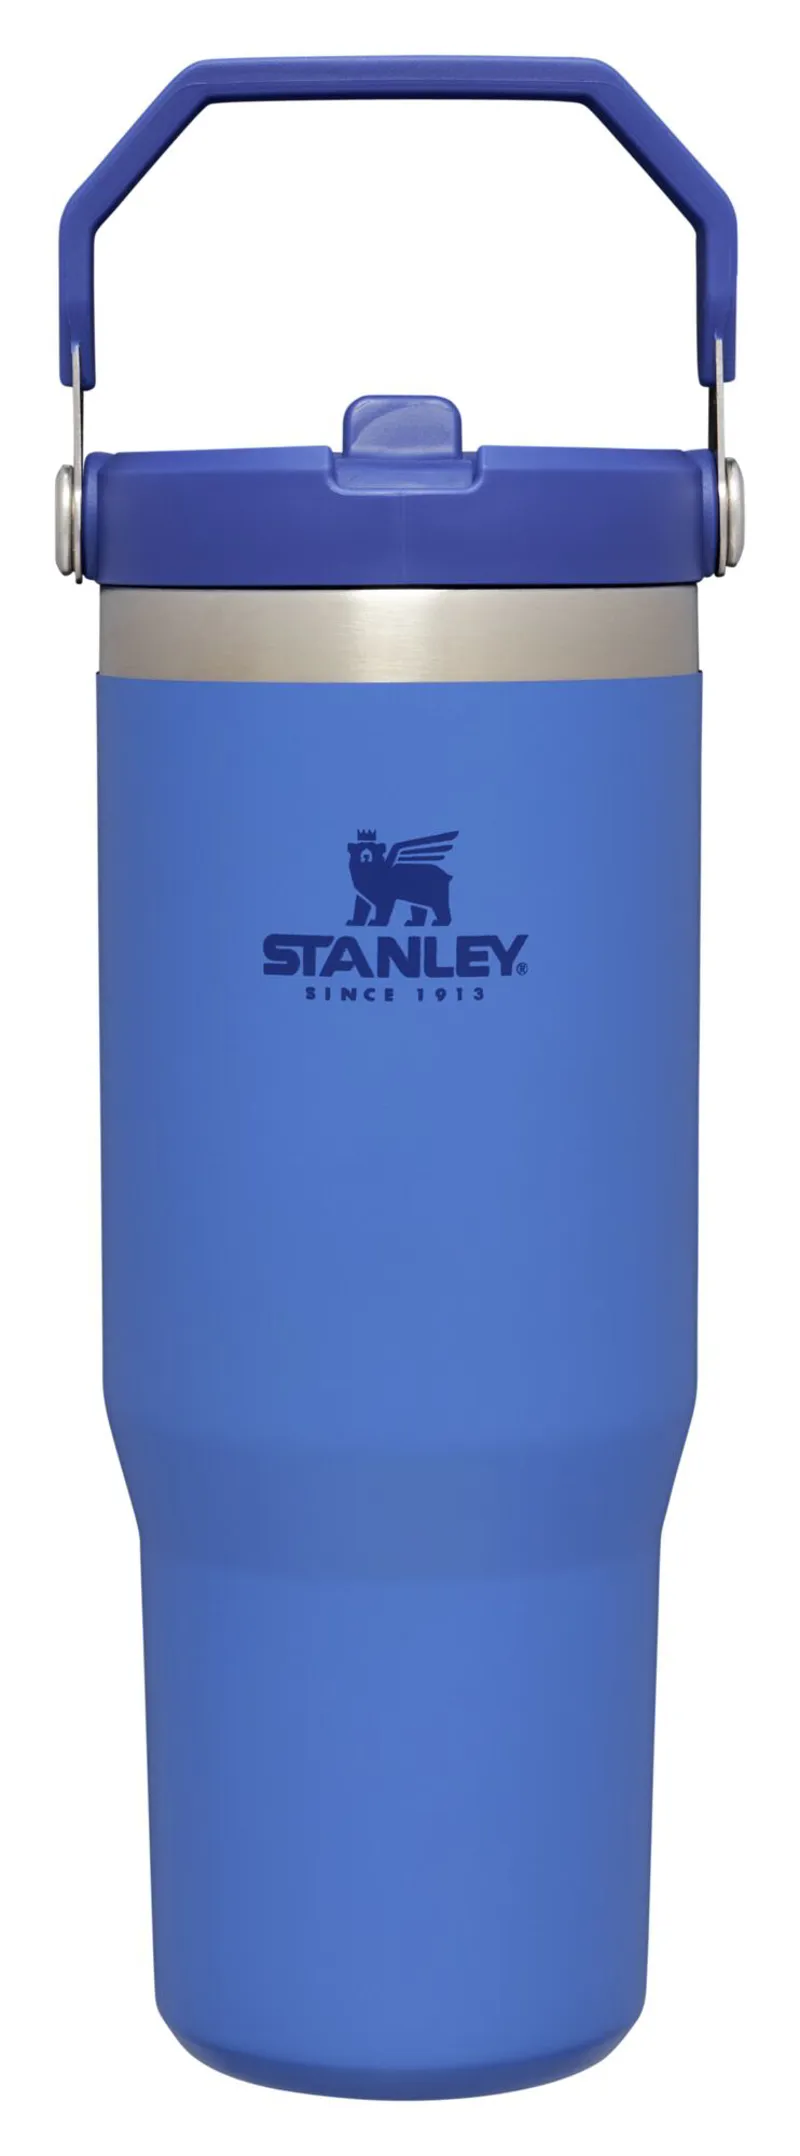 Stanley Rose Quartz Classic Iceflow Flip Straw 0.89L Tumbler